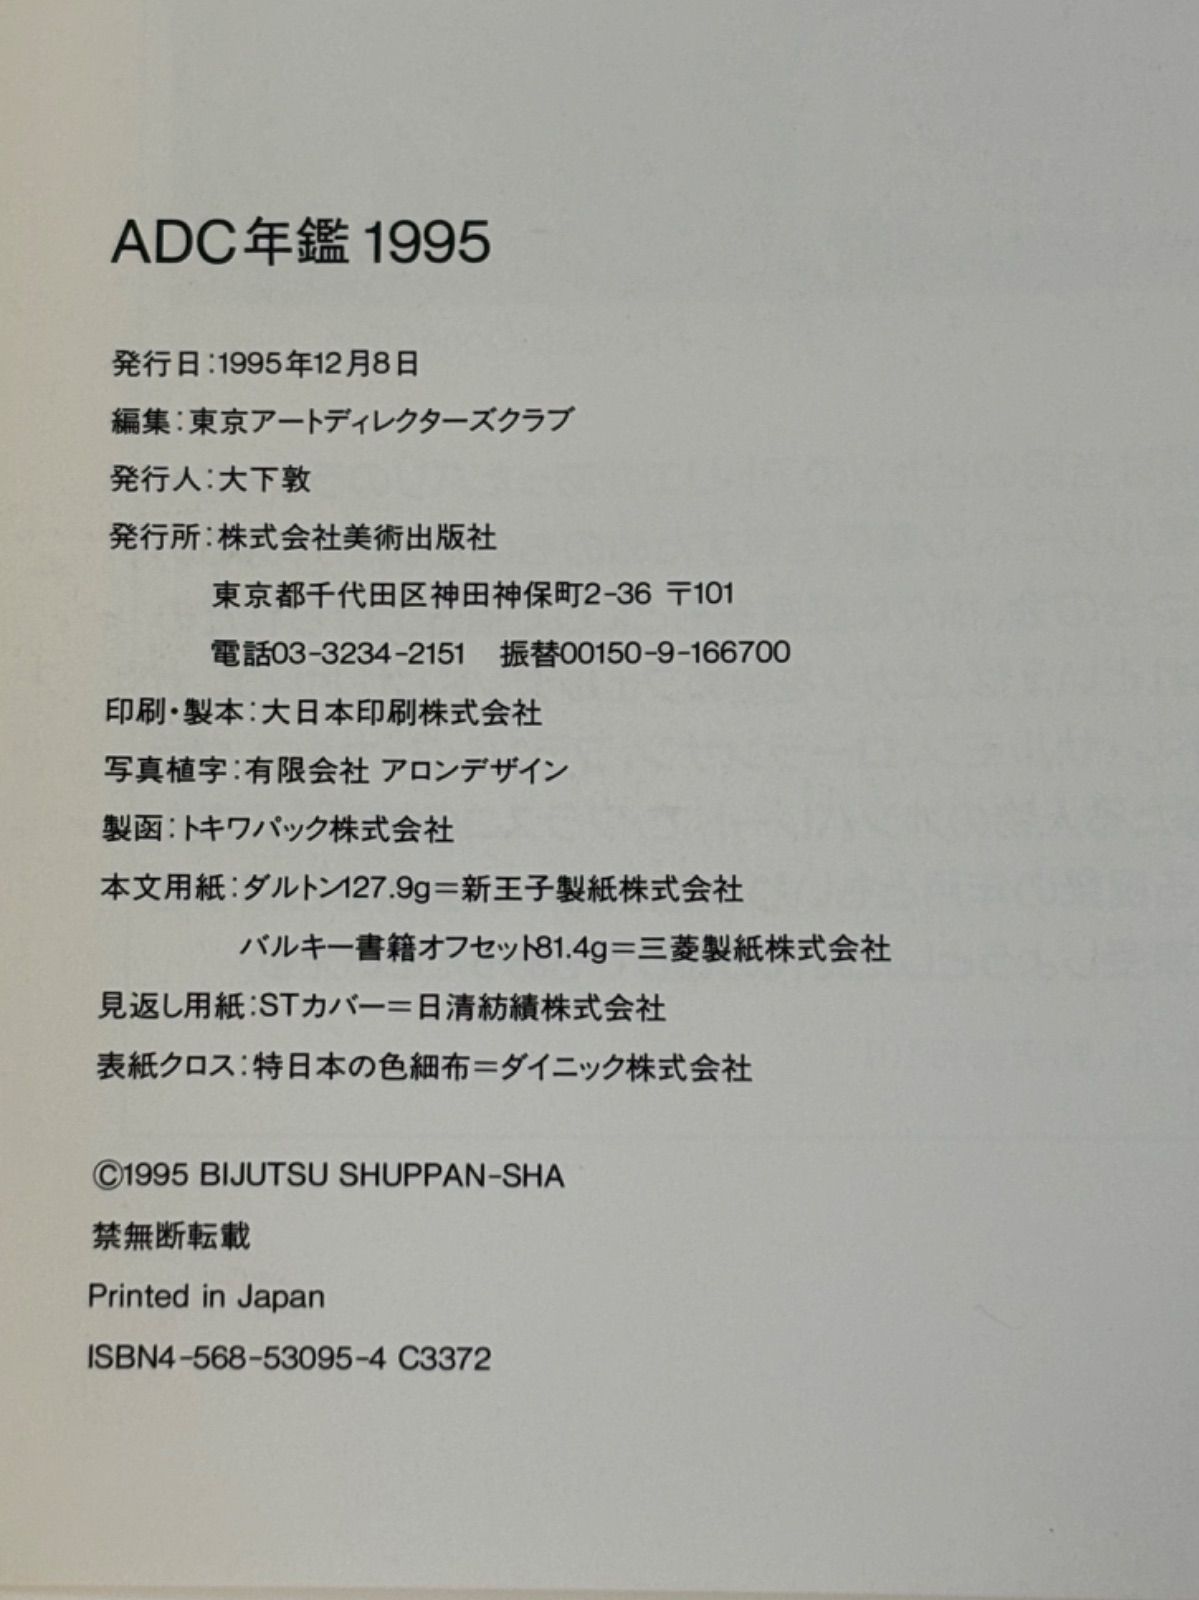 ADC年鑑 TOKY O ART DIRECTORS CLU B ANNUAL 1995/1997/1999 3冊まとめ - メルカリ